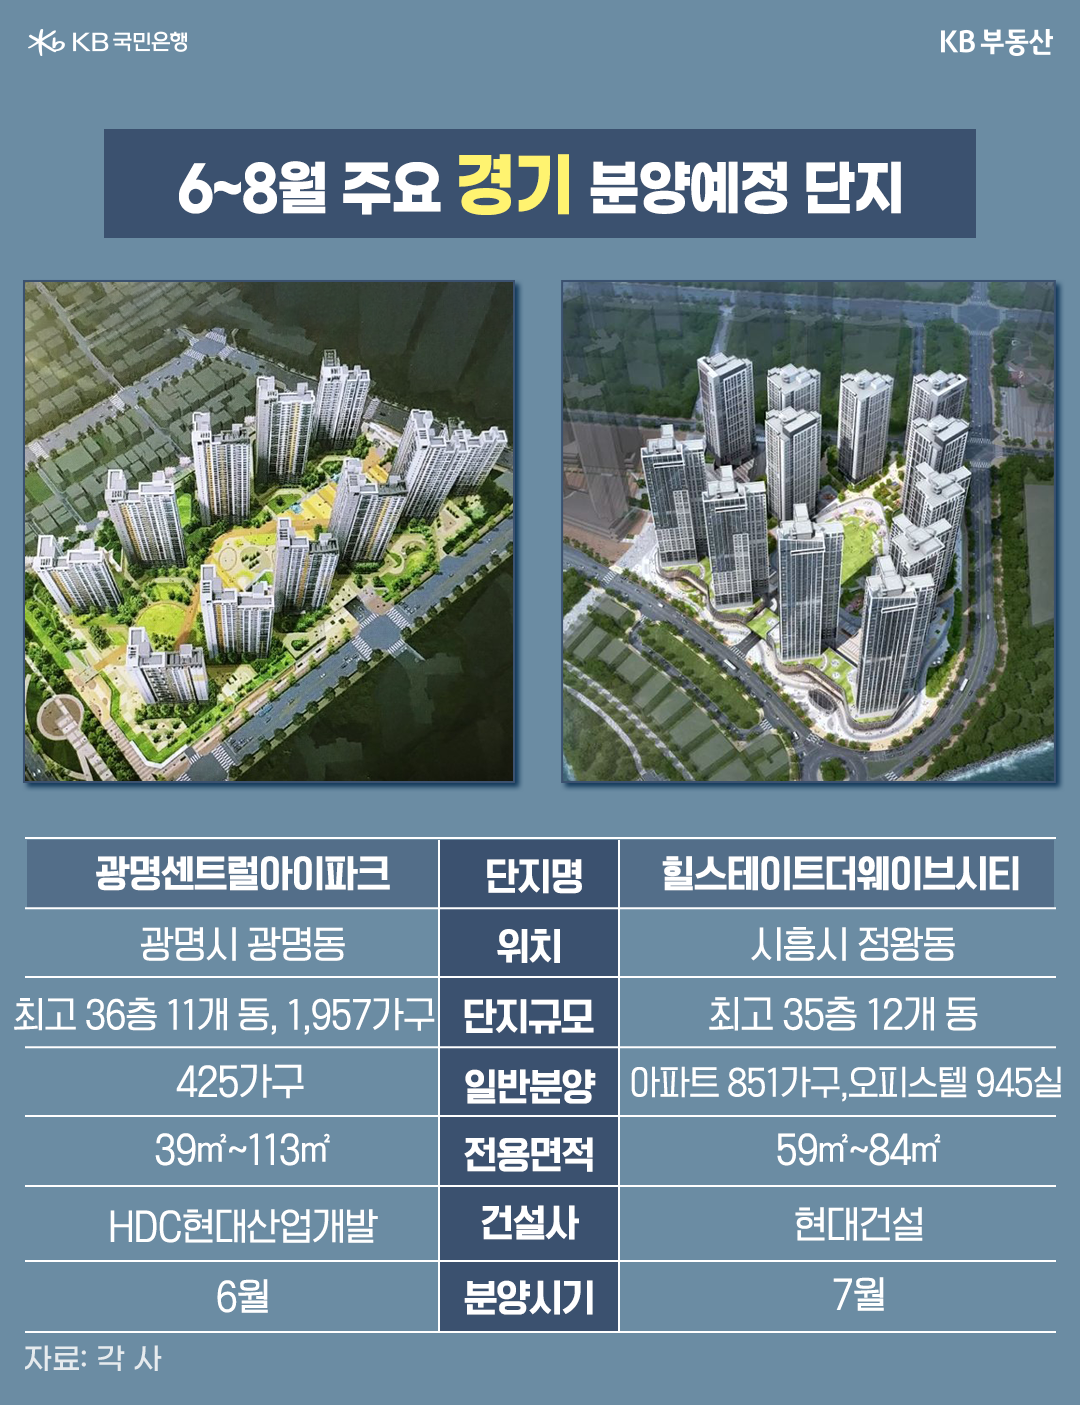 6~8월 '주요 경기 분양예정 단지'의 조감도와 설명을 보여주고 있다. 광명시 광명동 '광명센트럴아이파크'와 시흥시 정왕동 '힐스테이트더웨이브시티'를 소개하고 있다.